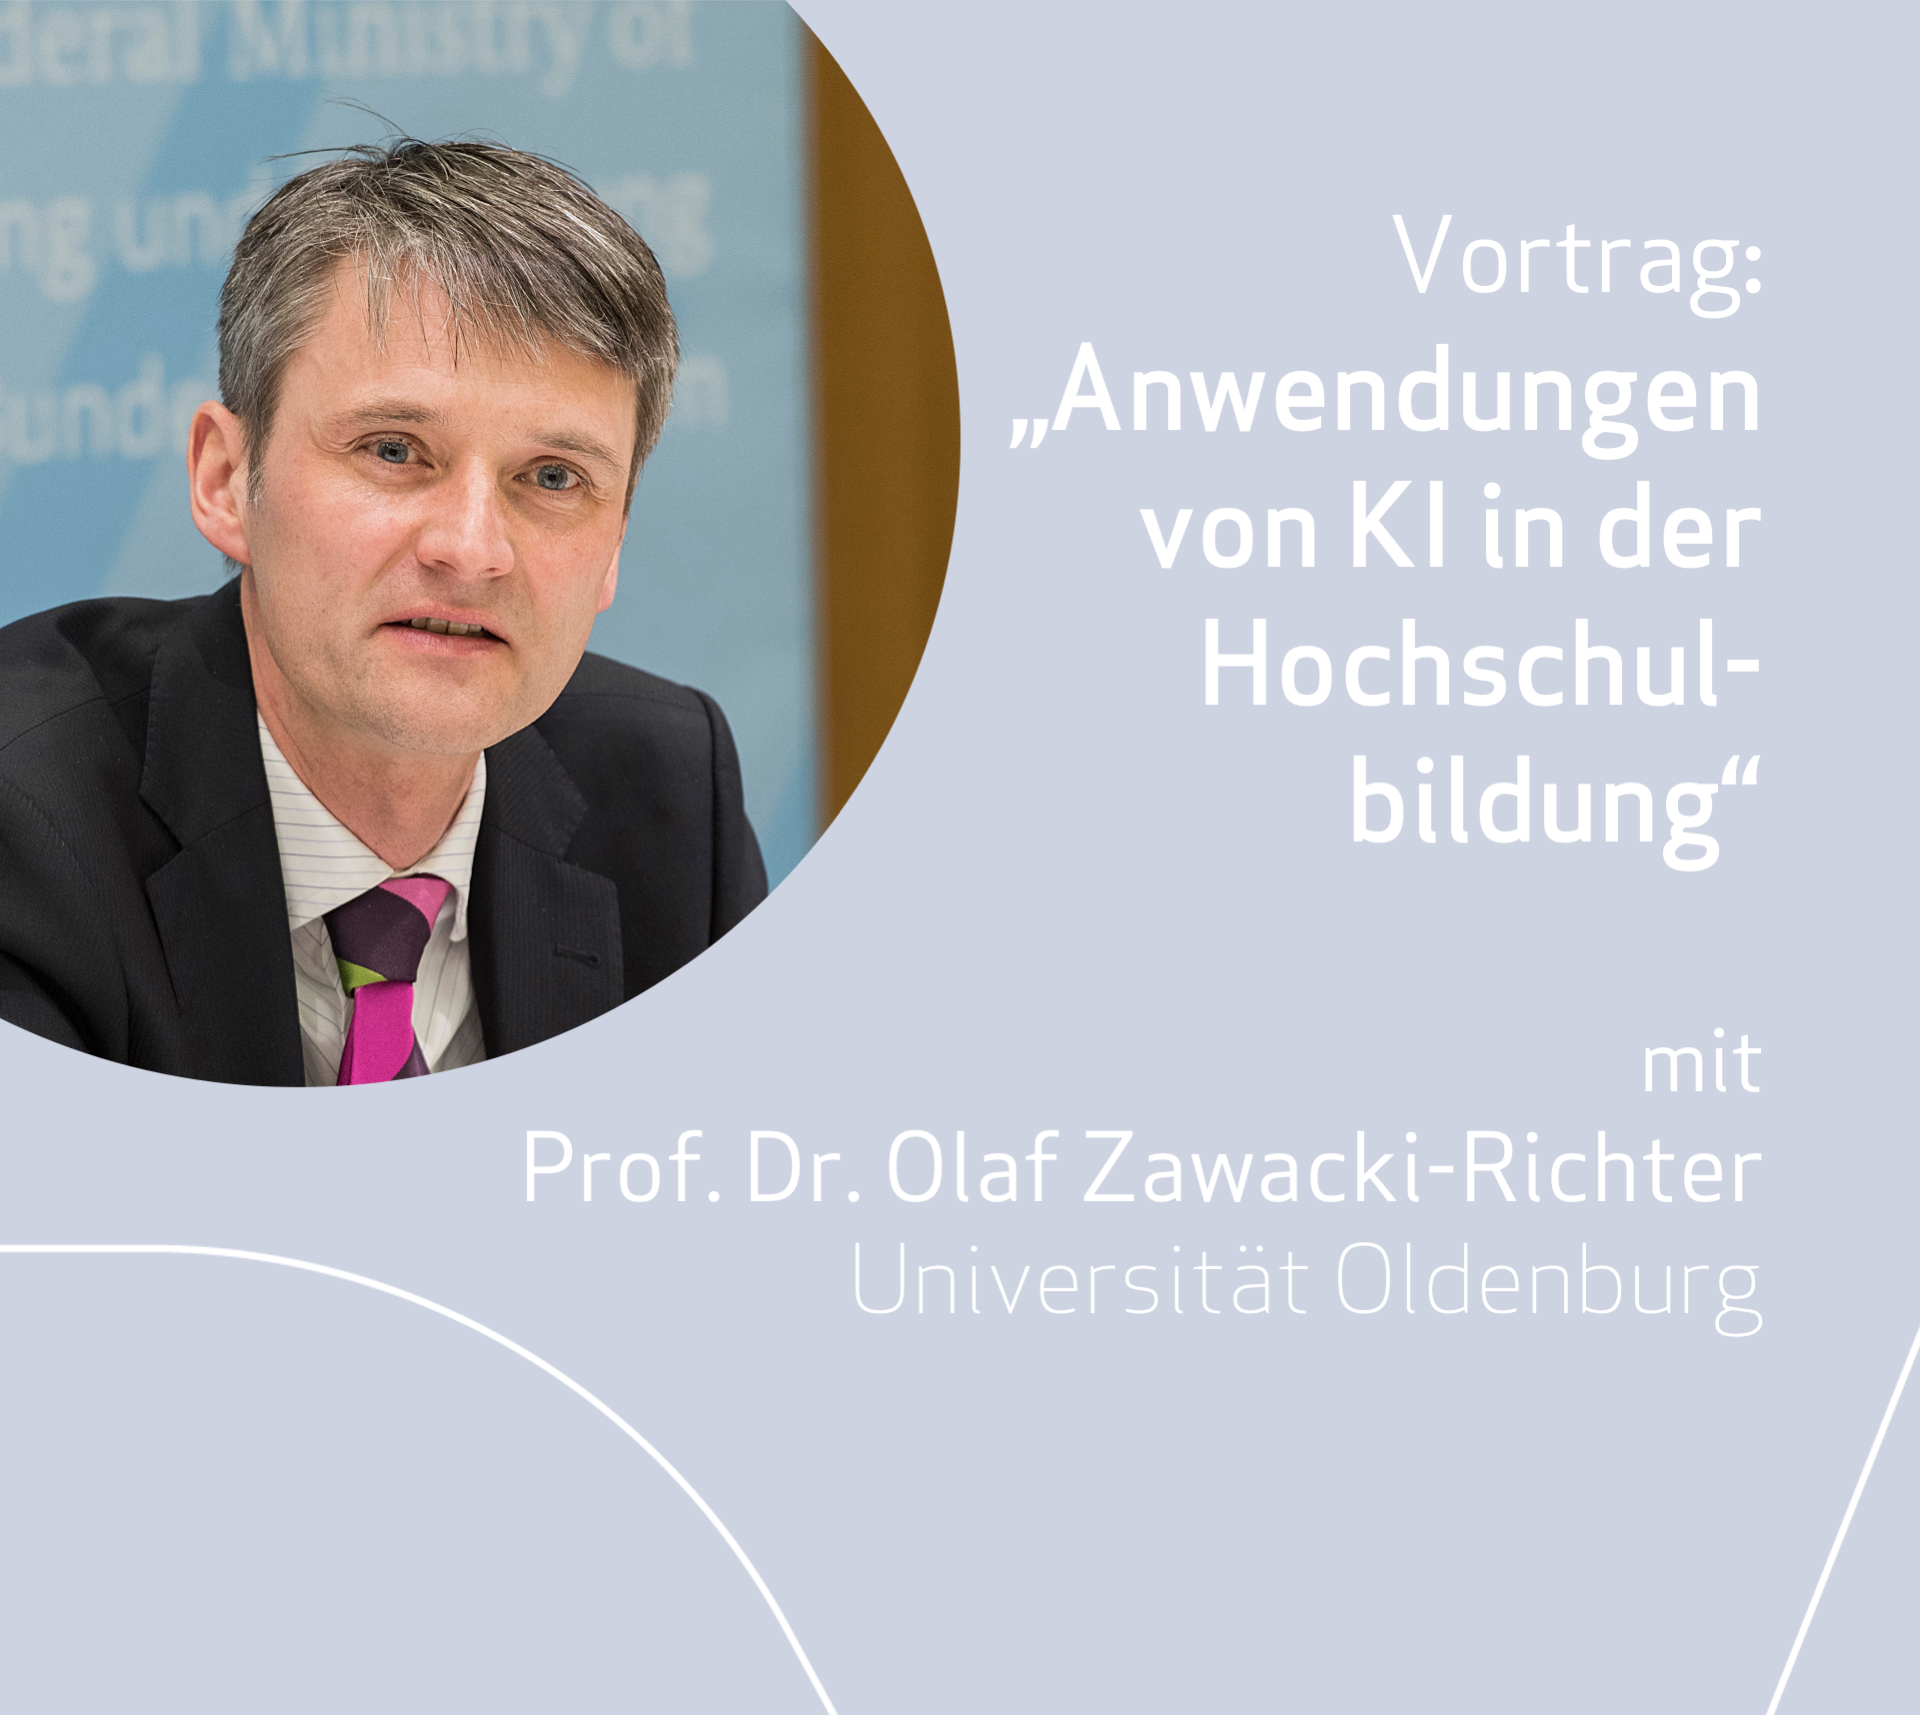 Pre-Conference | Keynote von Prof. Dr. Olaf Zawacki-Richter: "Anwendungen künstlicher Intelligenz in der Hochschulbildung – Entwicklung eines Forschungsfeldes"